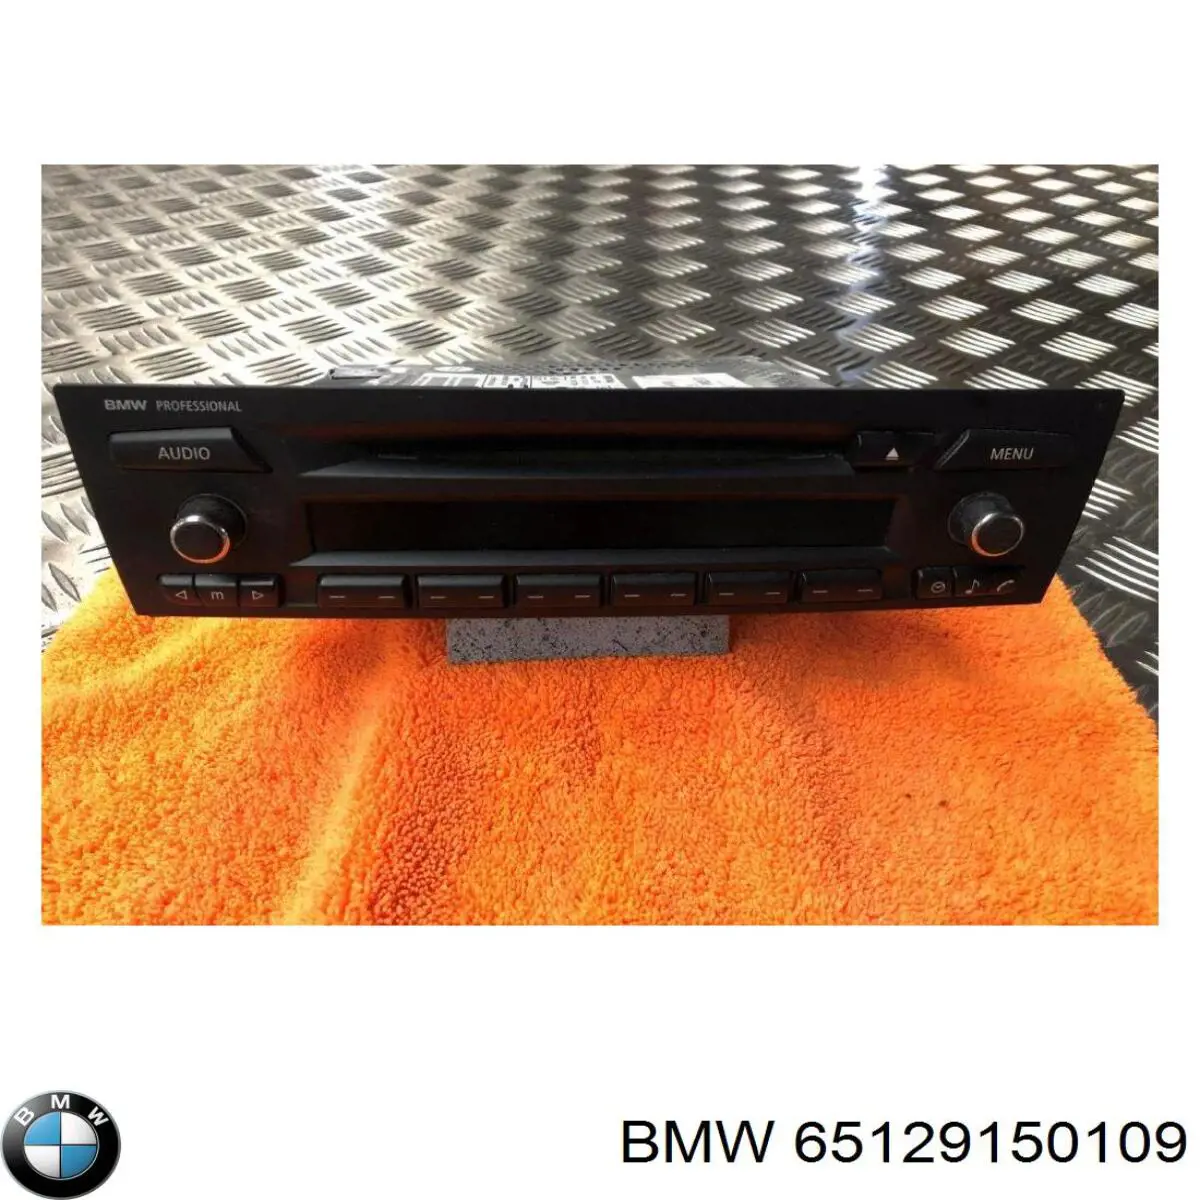 65126954047 BMW radio (radio am/fm)